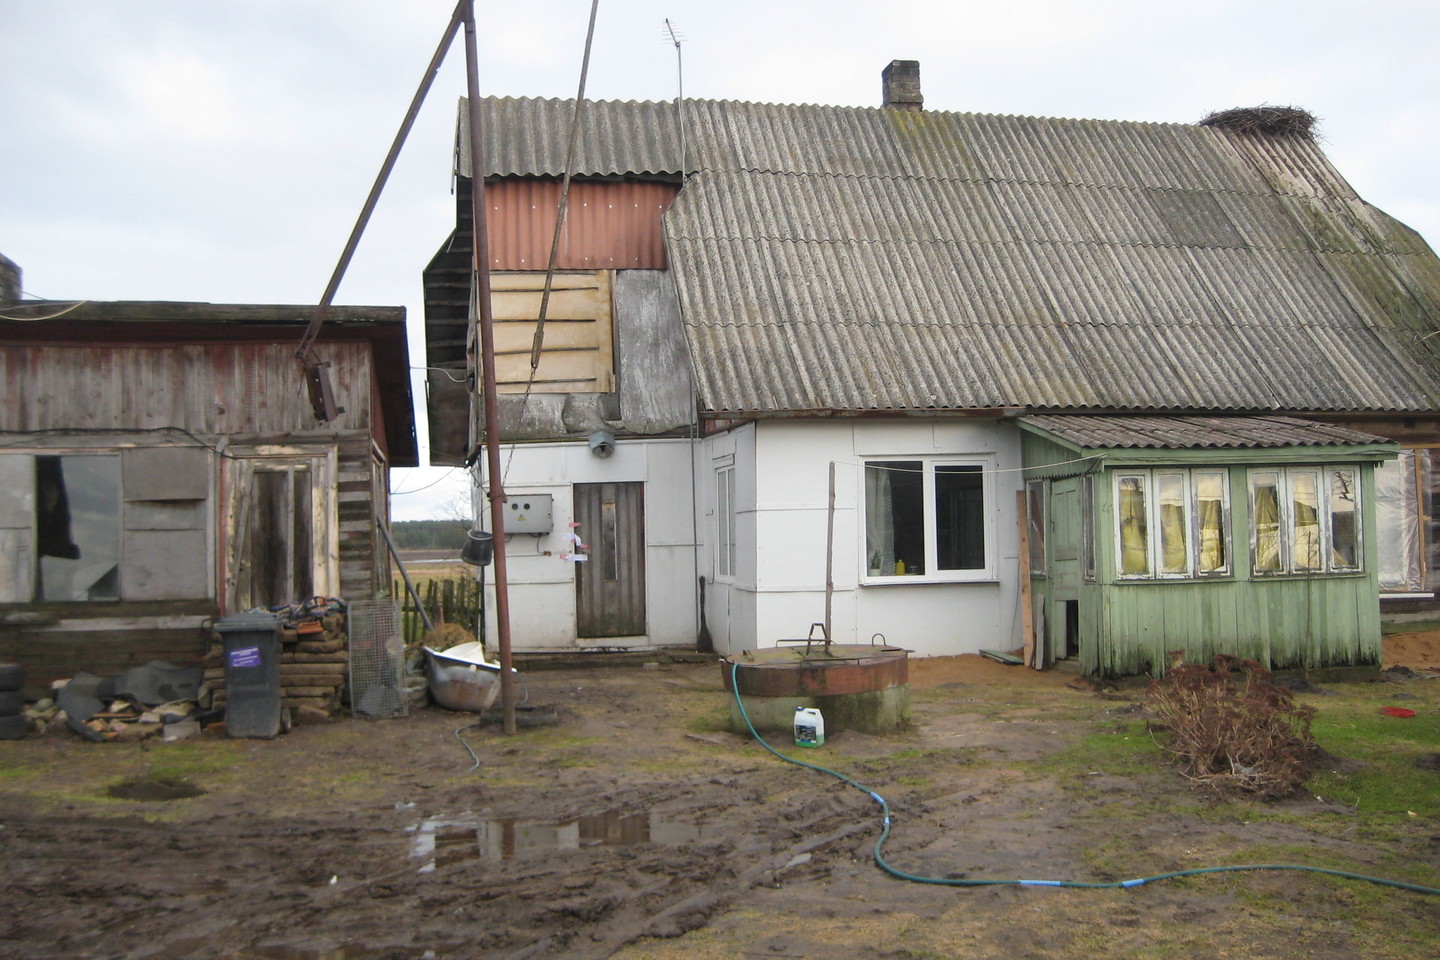 Trijų vaikų motina 2014-ųjų vasarį buvo nužudyta šioje Brastos kaimo sodyboje.<br>L.Juodzevičienės nuotr.